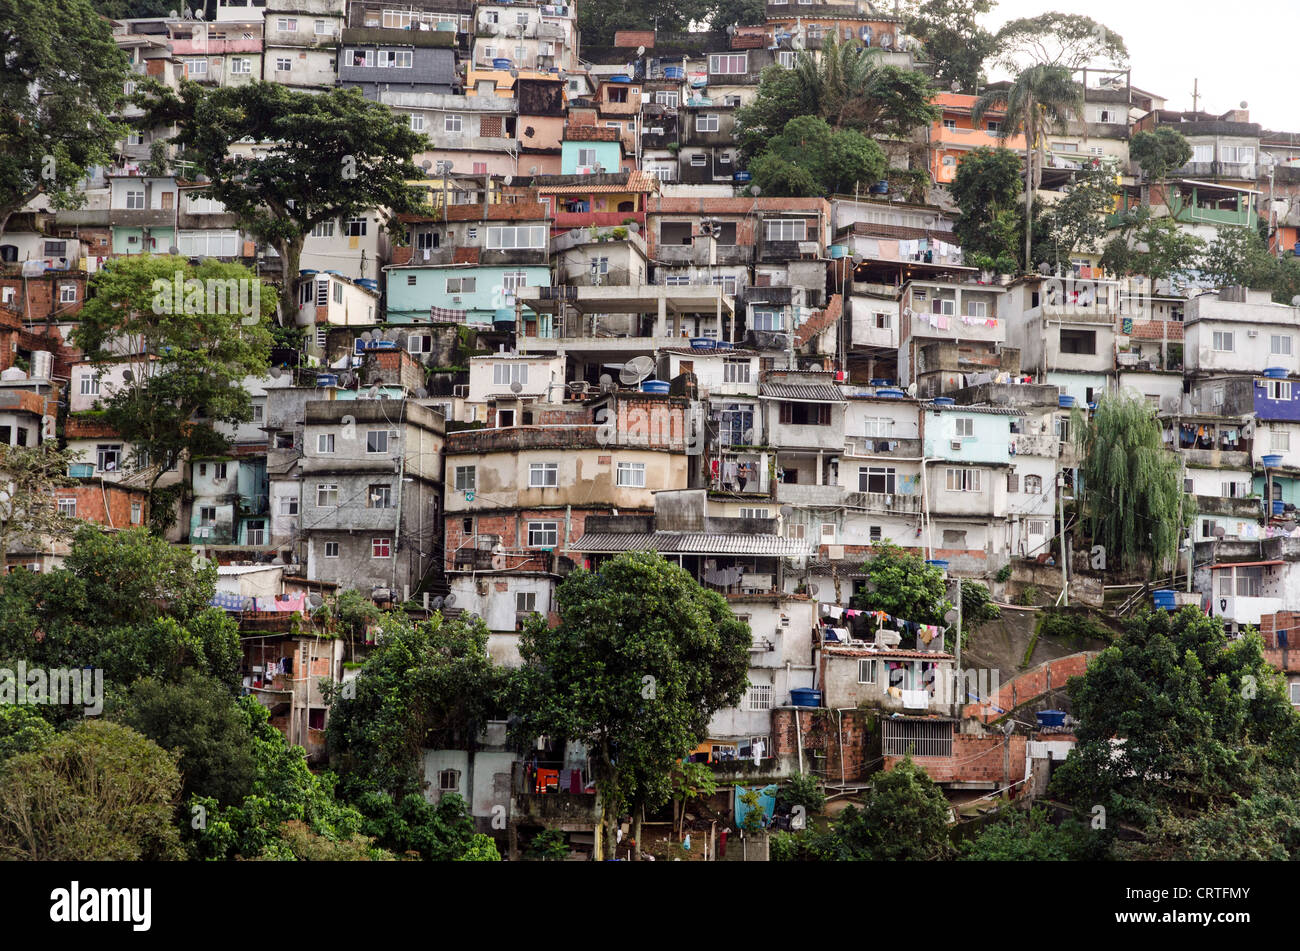 Favela Rio de Janeiro Brazil South America Stock Photo